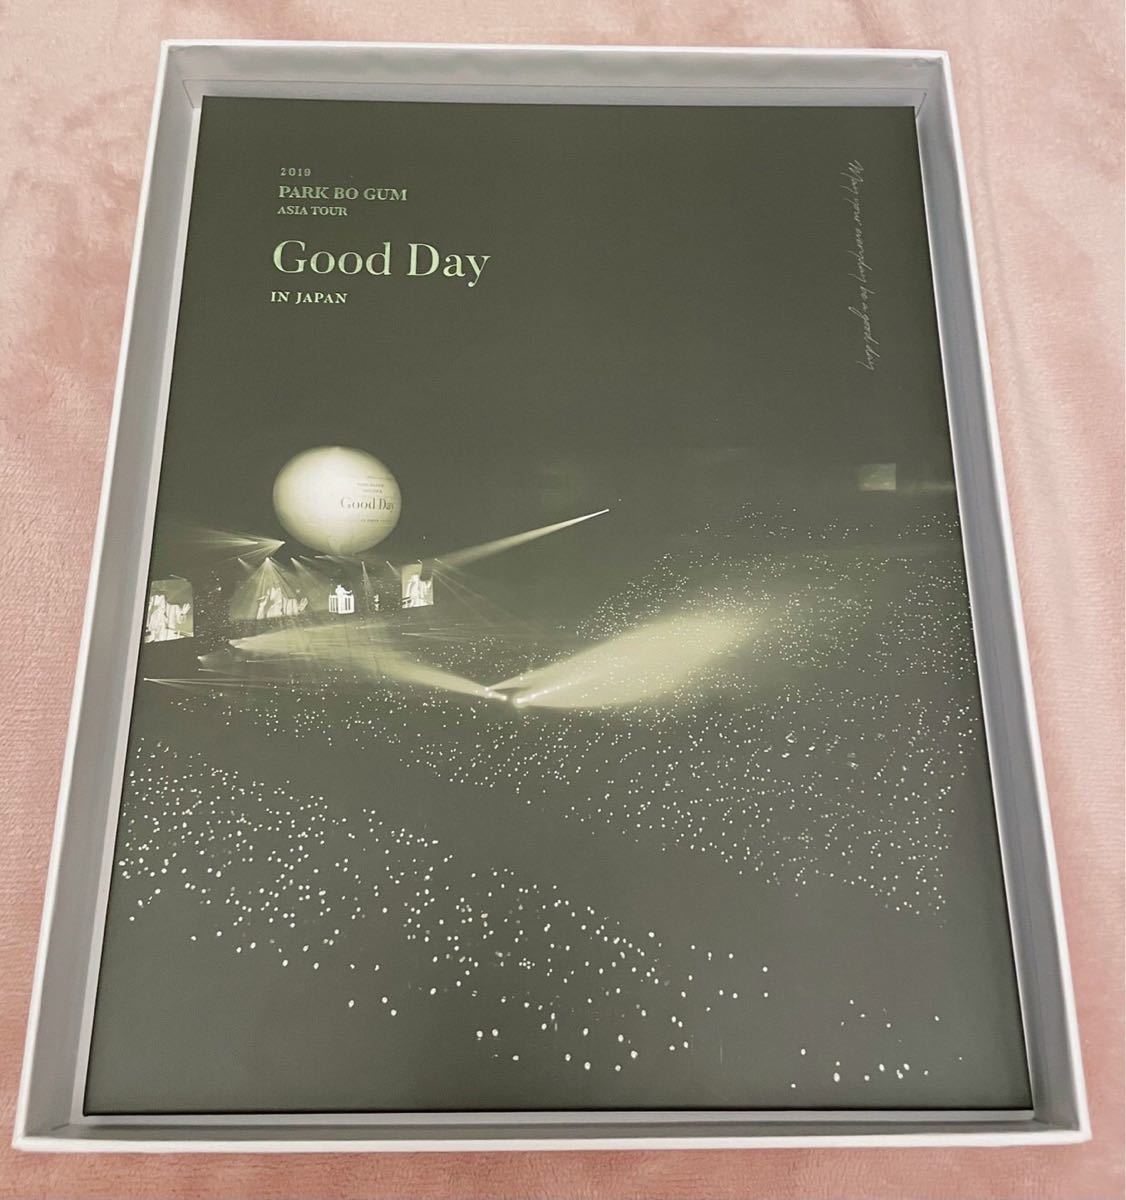 「パク・ボゴム/2019 PARK BO GUM ASIA TOUR IN JAPAN  Good Day:May your 